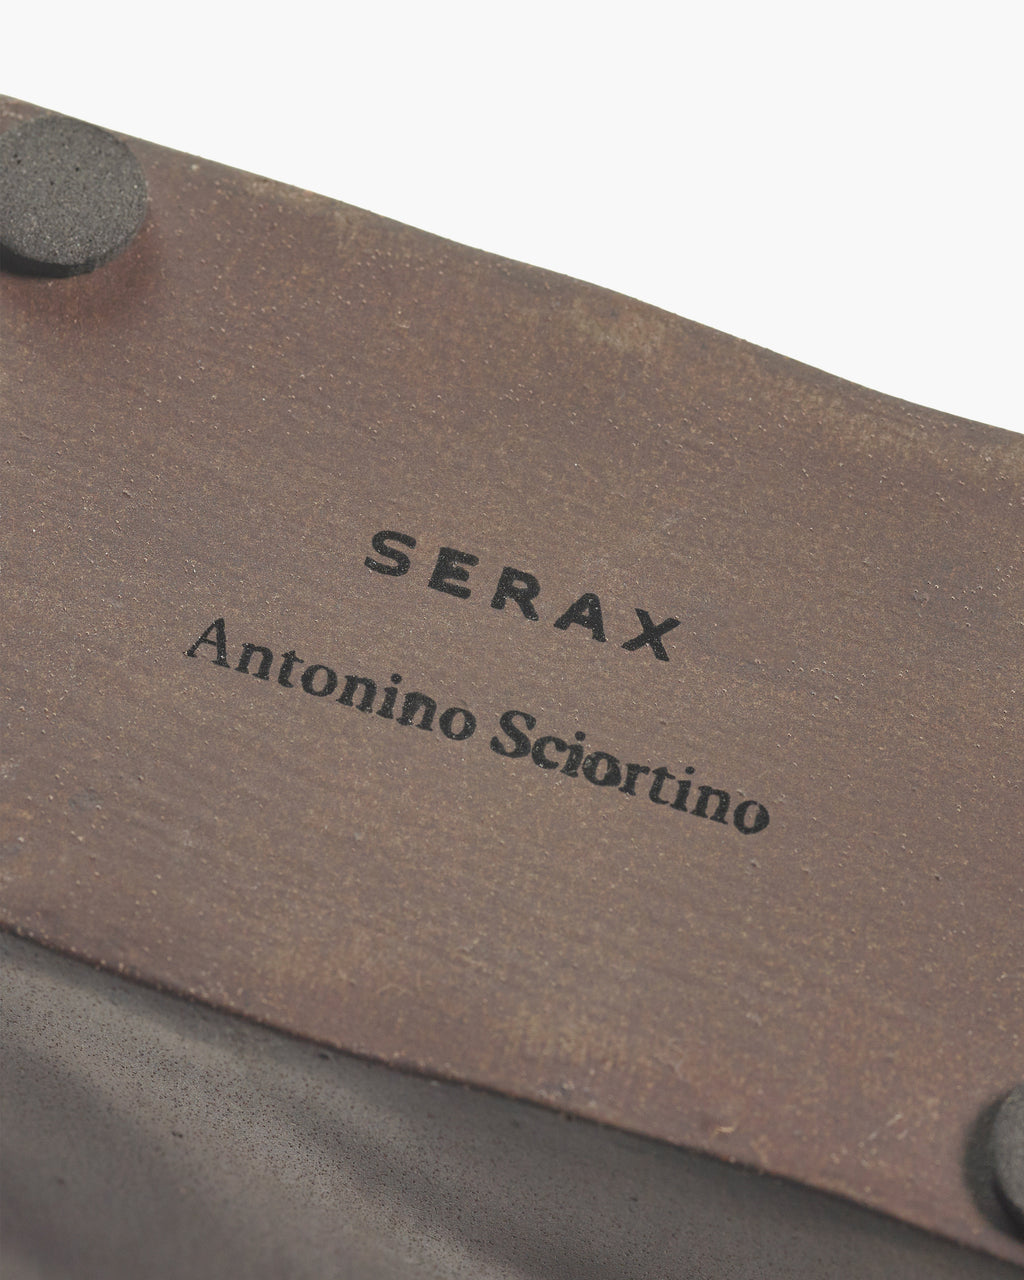 B7224203-706 Serax Antonino Sciortino